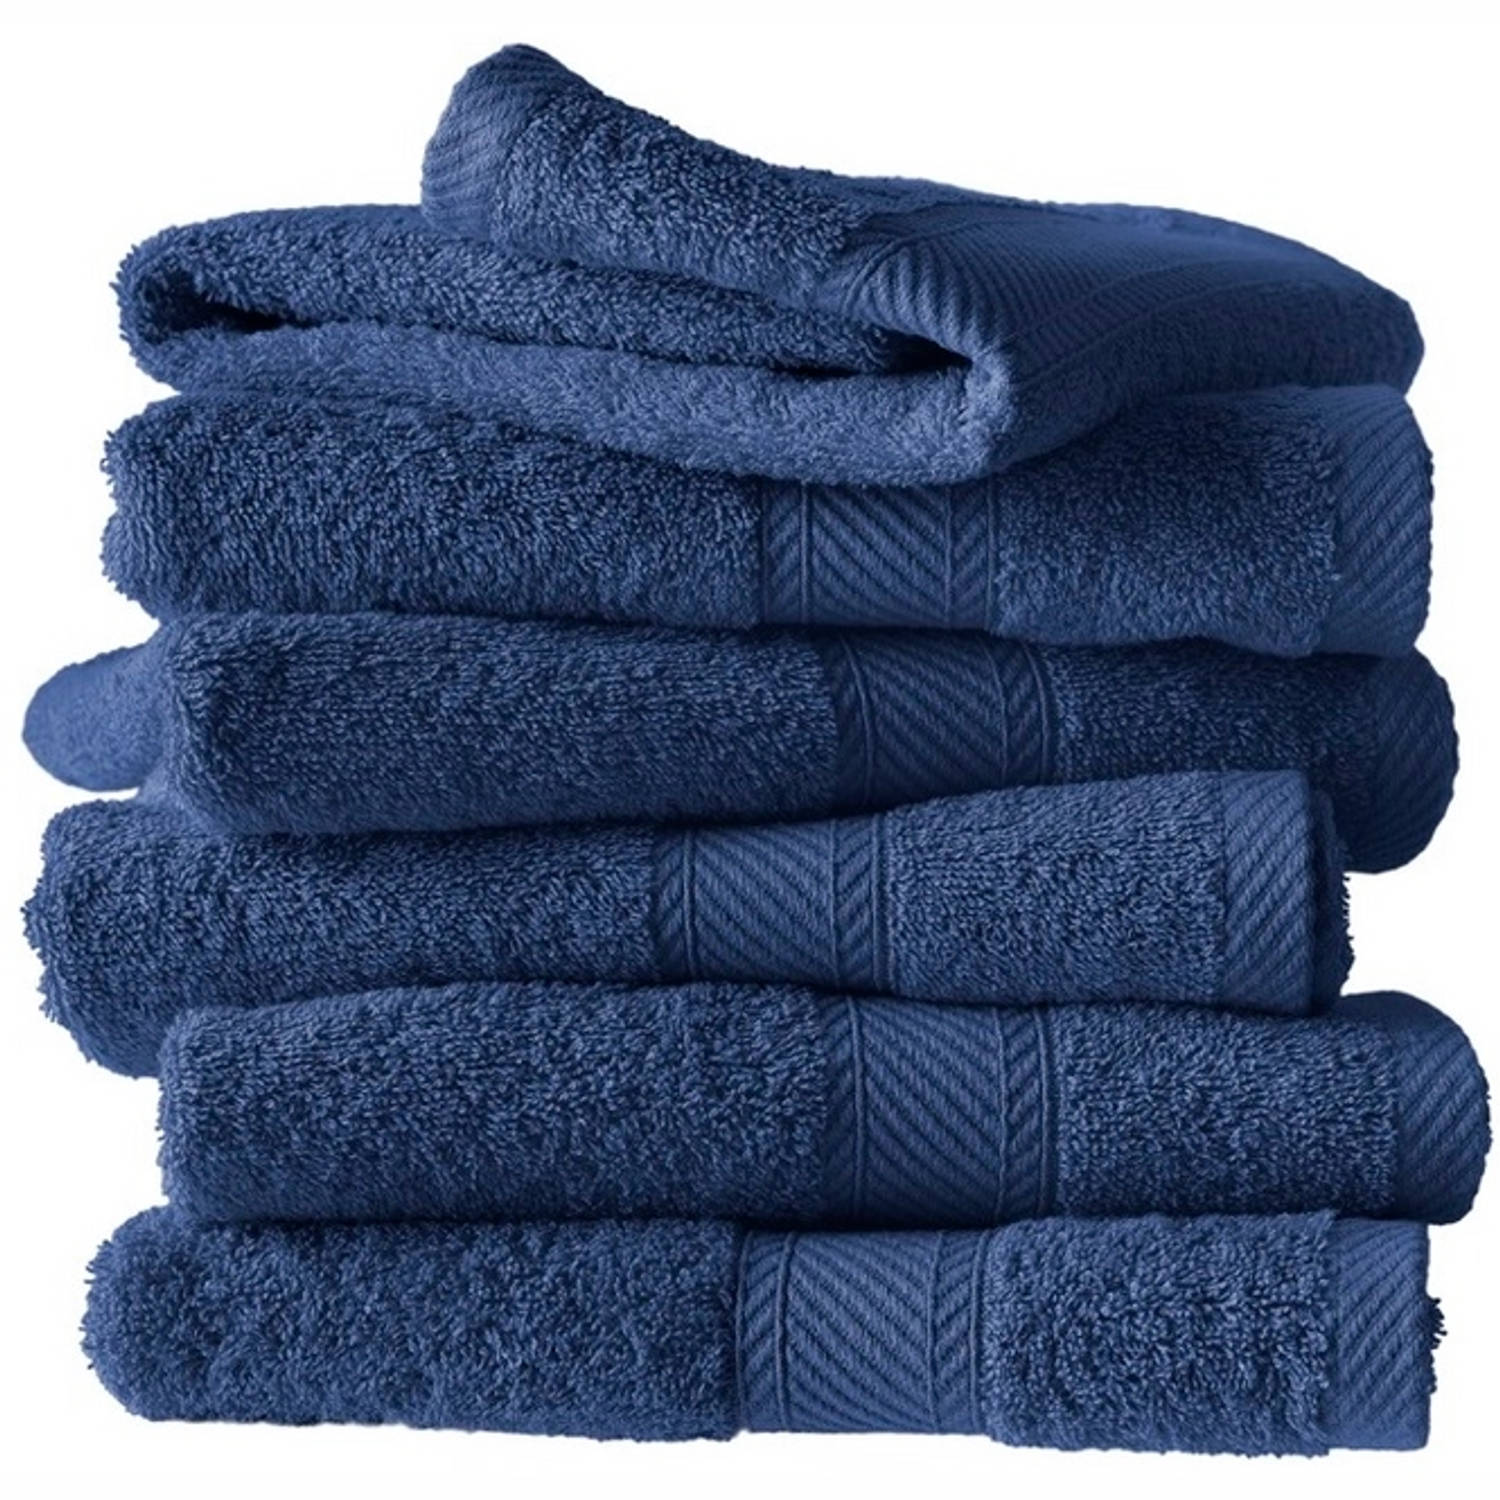 De Witte Lietaer Handdoeken Helene Blue Indigo 50 x 100 cm 6 stuks Katoen